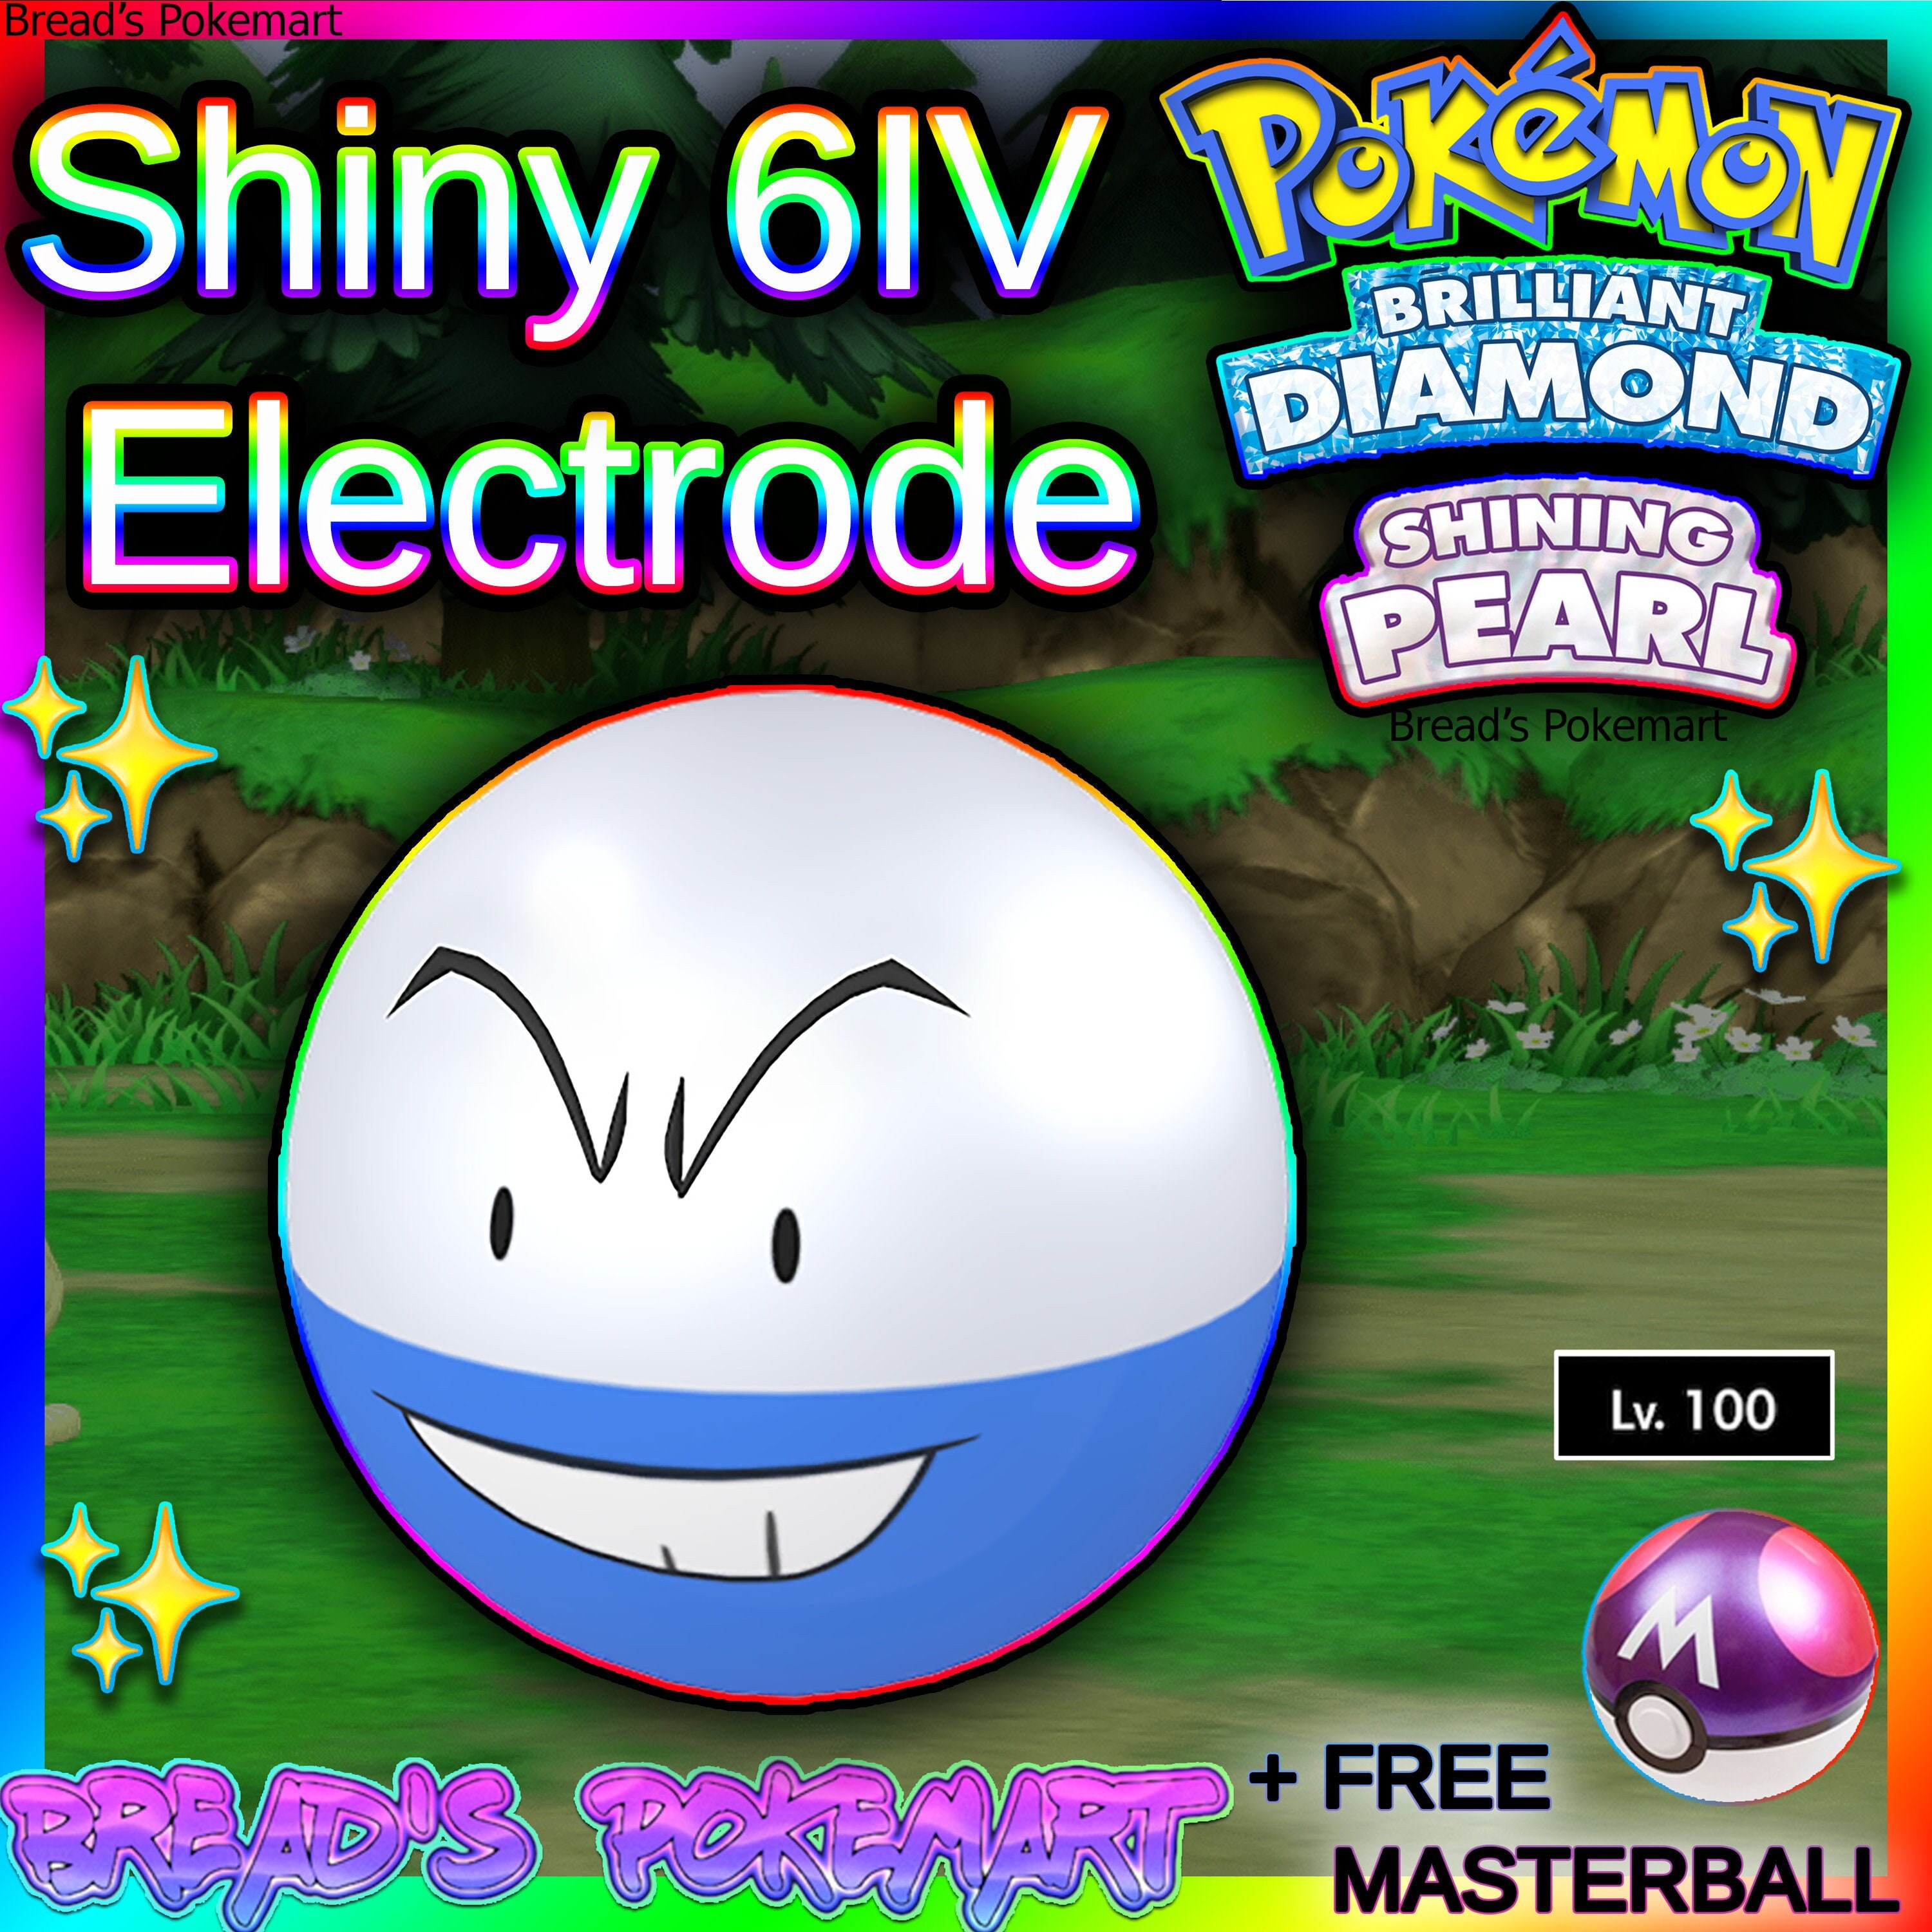 Live] Shiny Voltorb & Electrode in Pokémon Scarlet! 